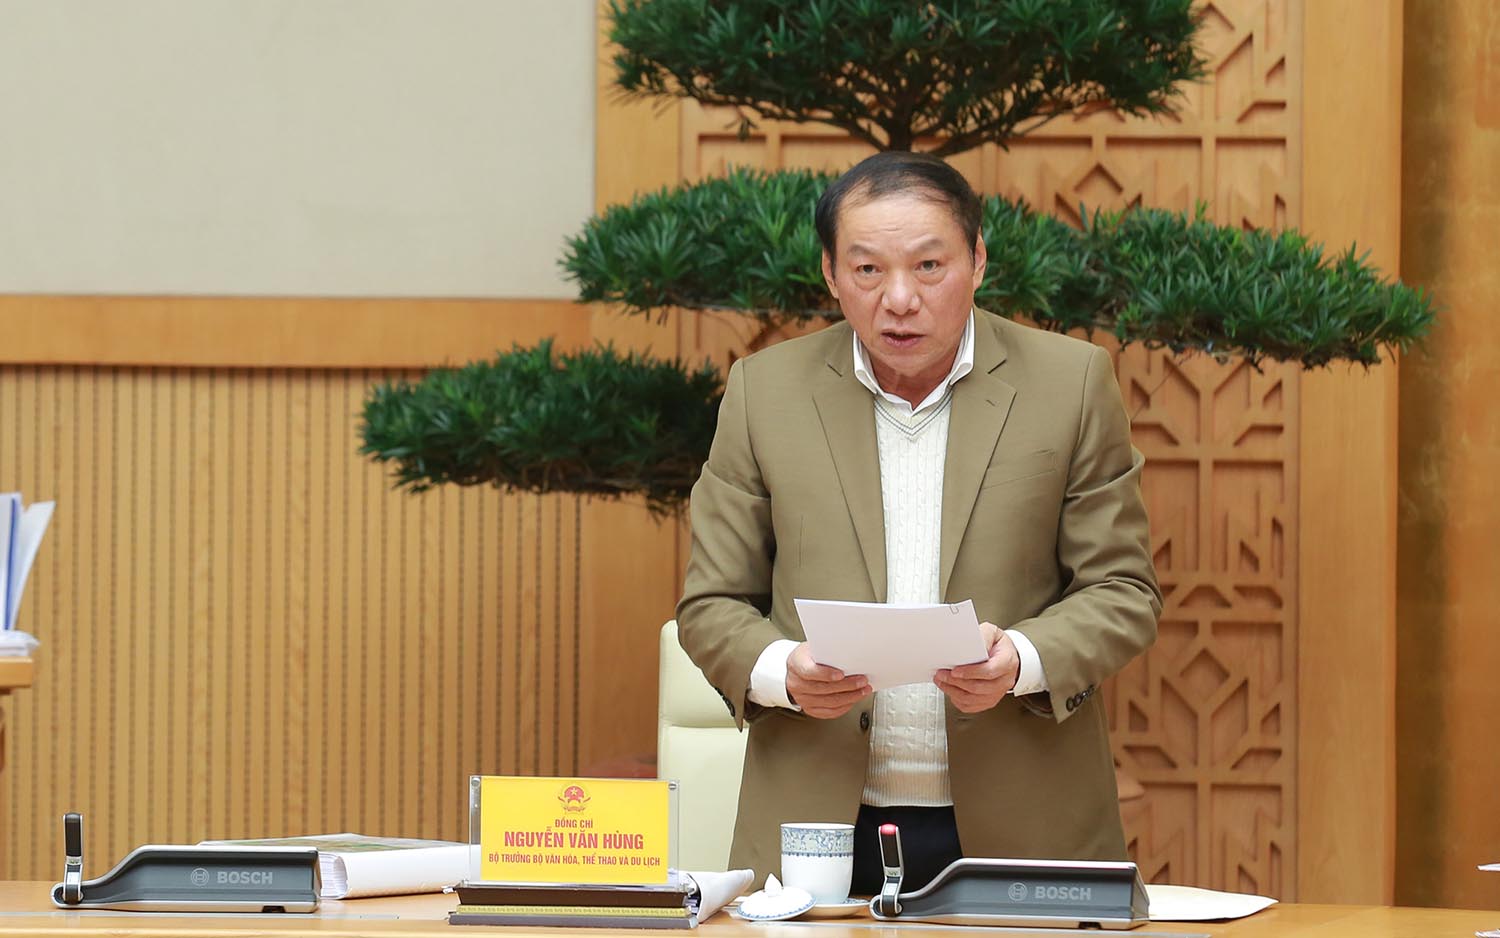 Bộ trưởng Bộ Văn hóa, Thể thao và Du lịch Nguyễn Văn Hùng phát biểu tại phiên họp. Ảnh: Diệp Trương